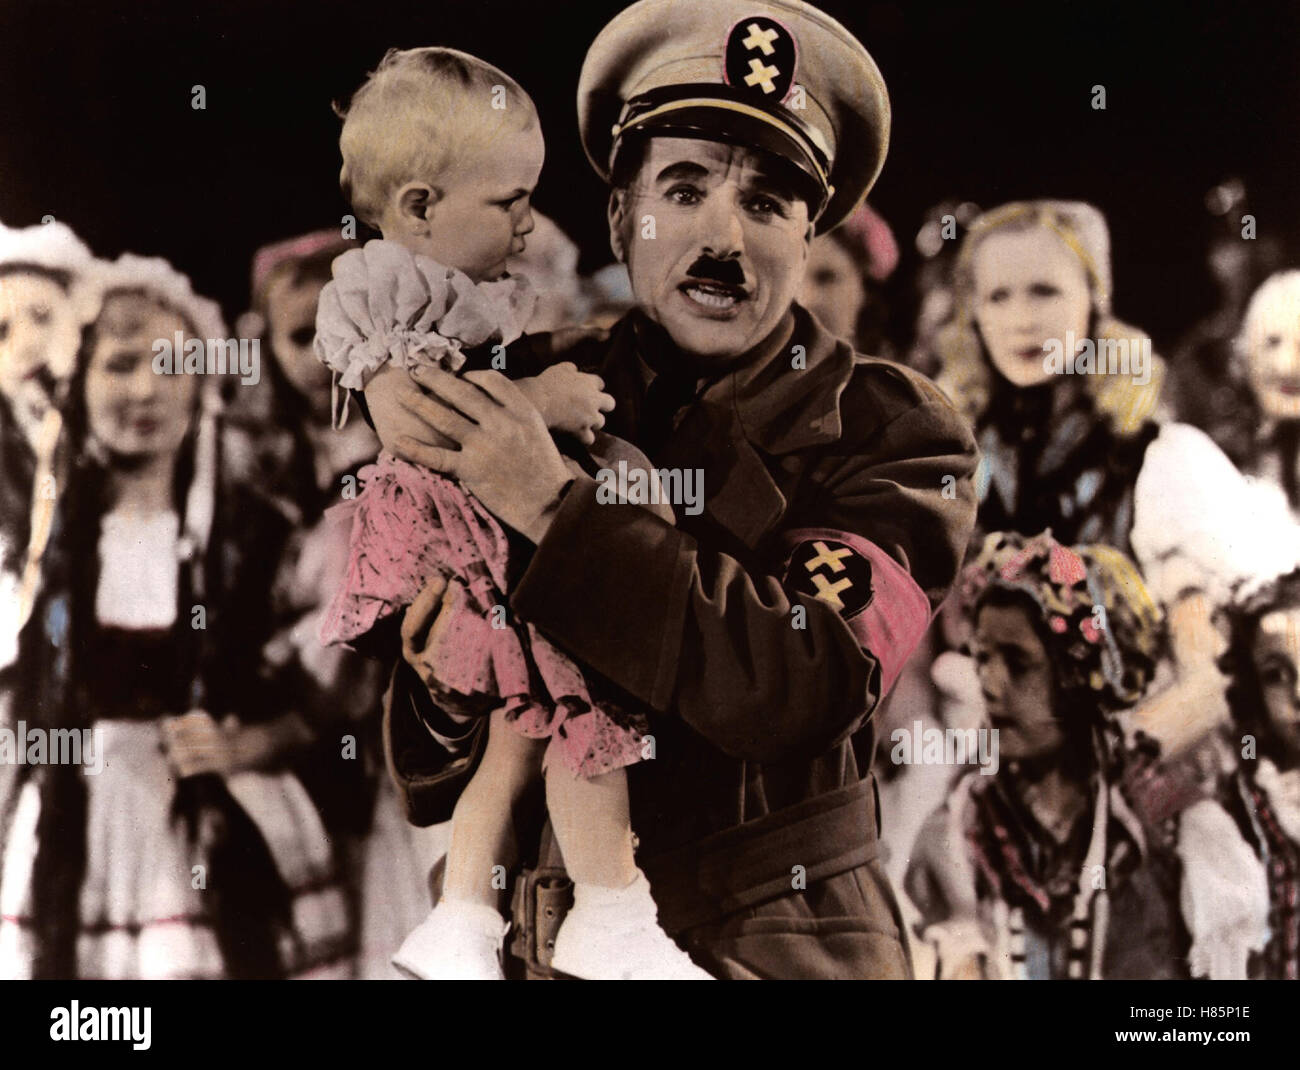 Der große Diktator, (il grande dittatore) USA 1940 s/w, Regie: Charles Chaplin, Charles Chaplin, Stichwort: uniforme, Schnauzbart Foto Stock